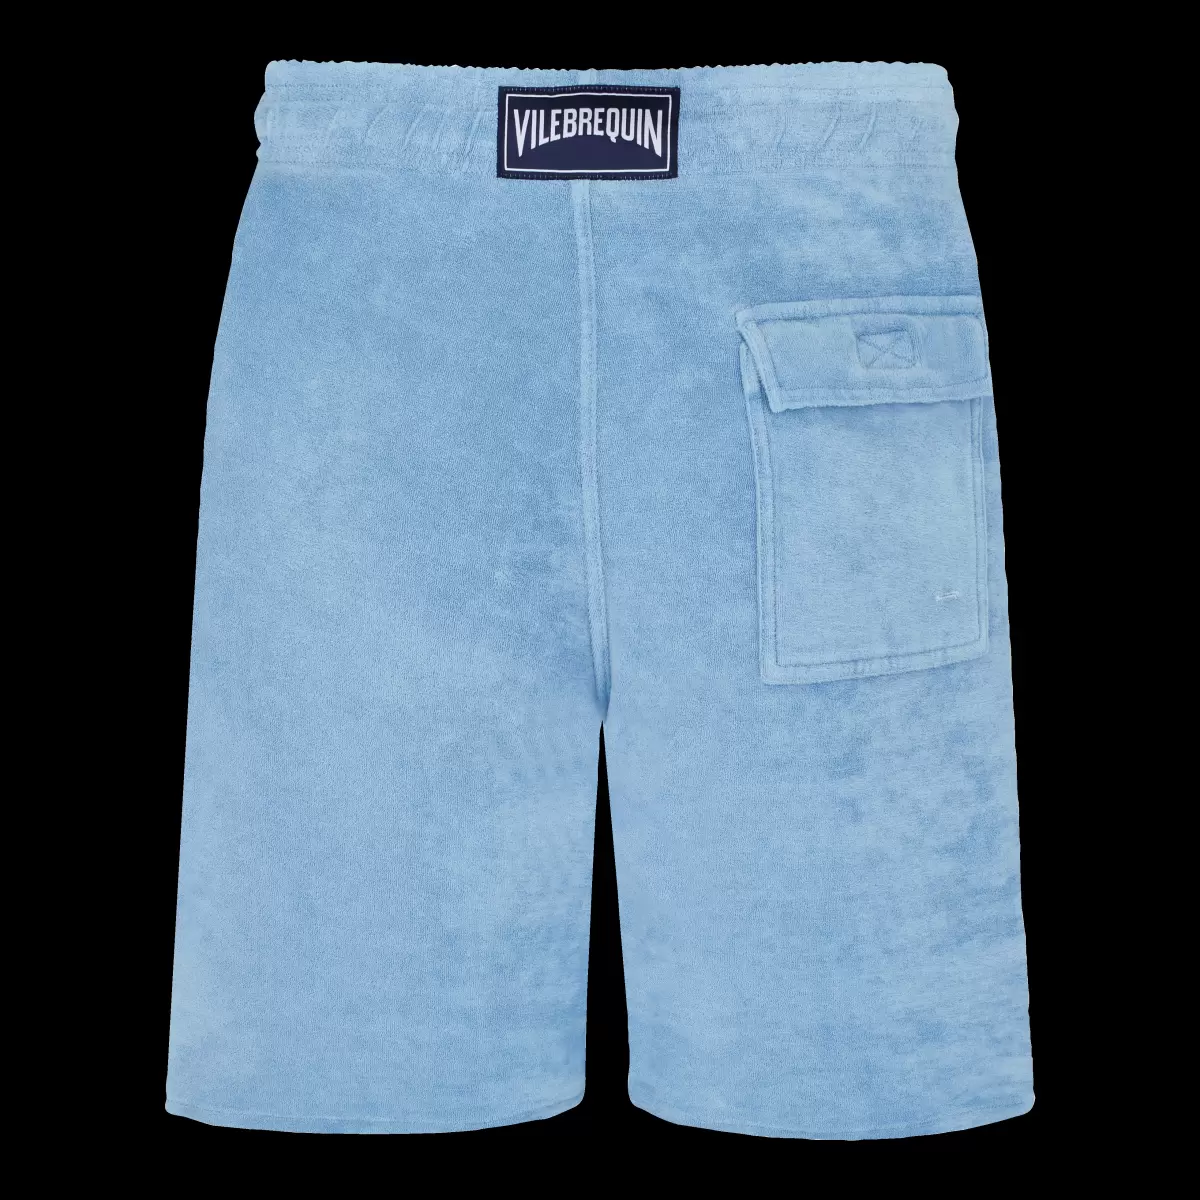 Produkt Shorts Herren Vilebrequin Source / Blau Solid Bermudashorts Aus Frottee Mit Mineralfarbstoff Für Herren - 4